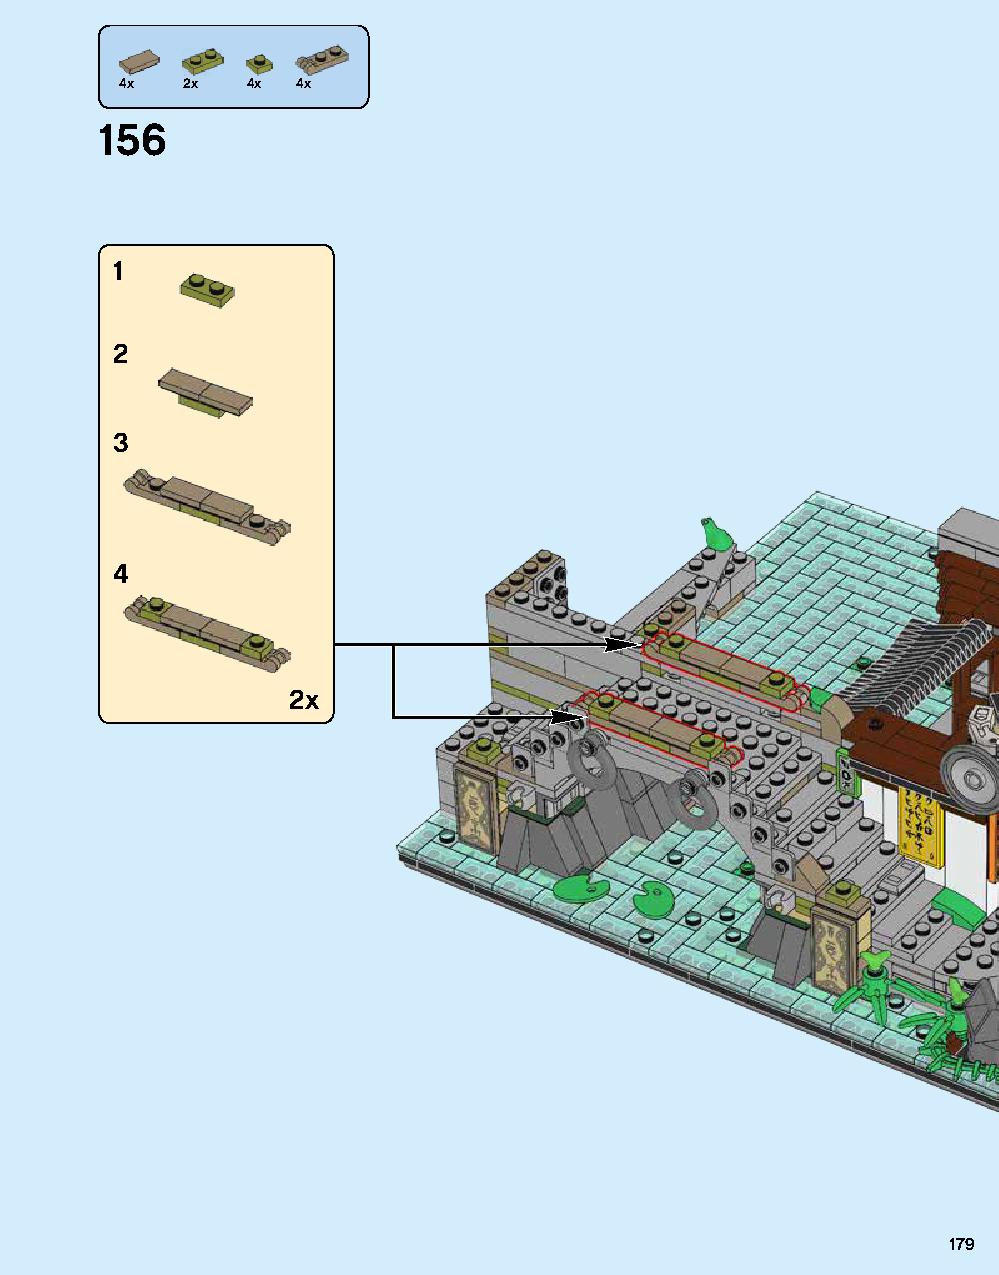 ニンジャゴー シティ 70620 レゴの商品情報 レゴの説明書・組立方法 179 page